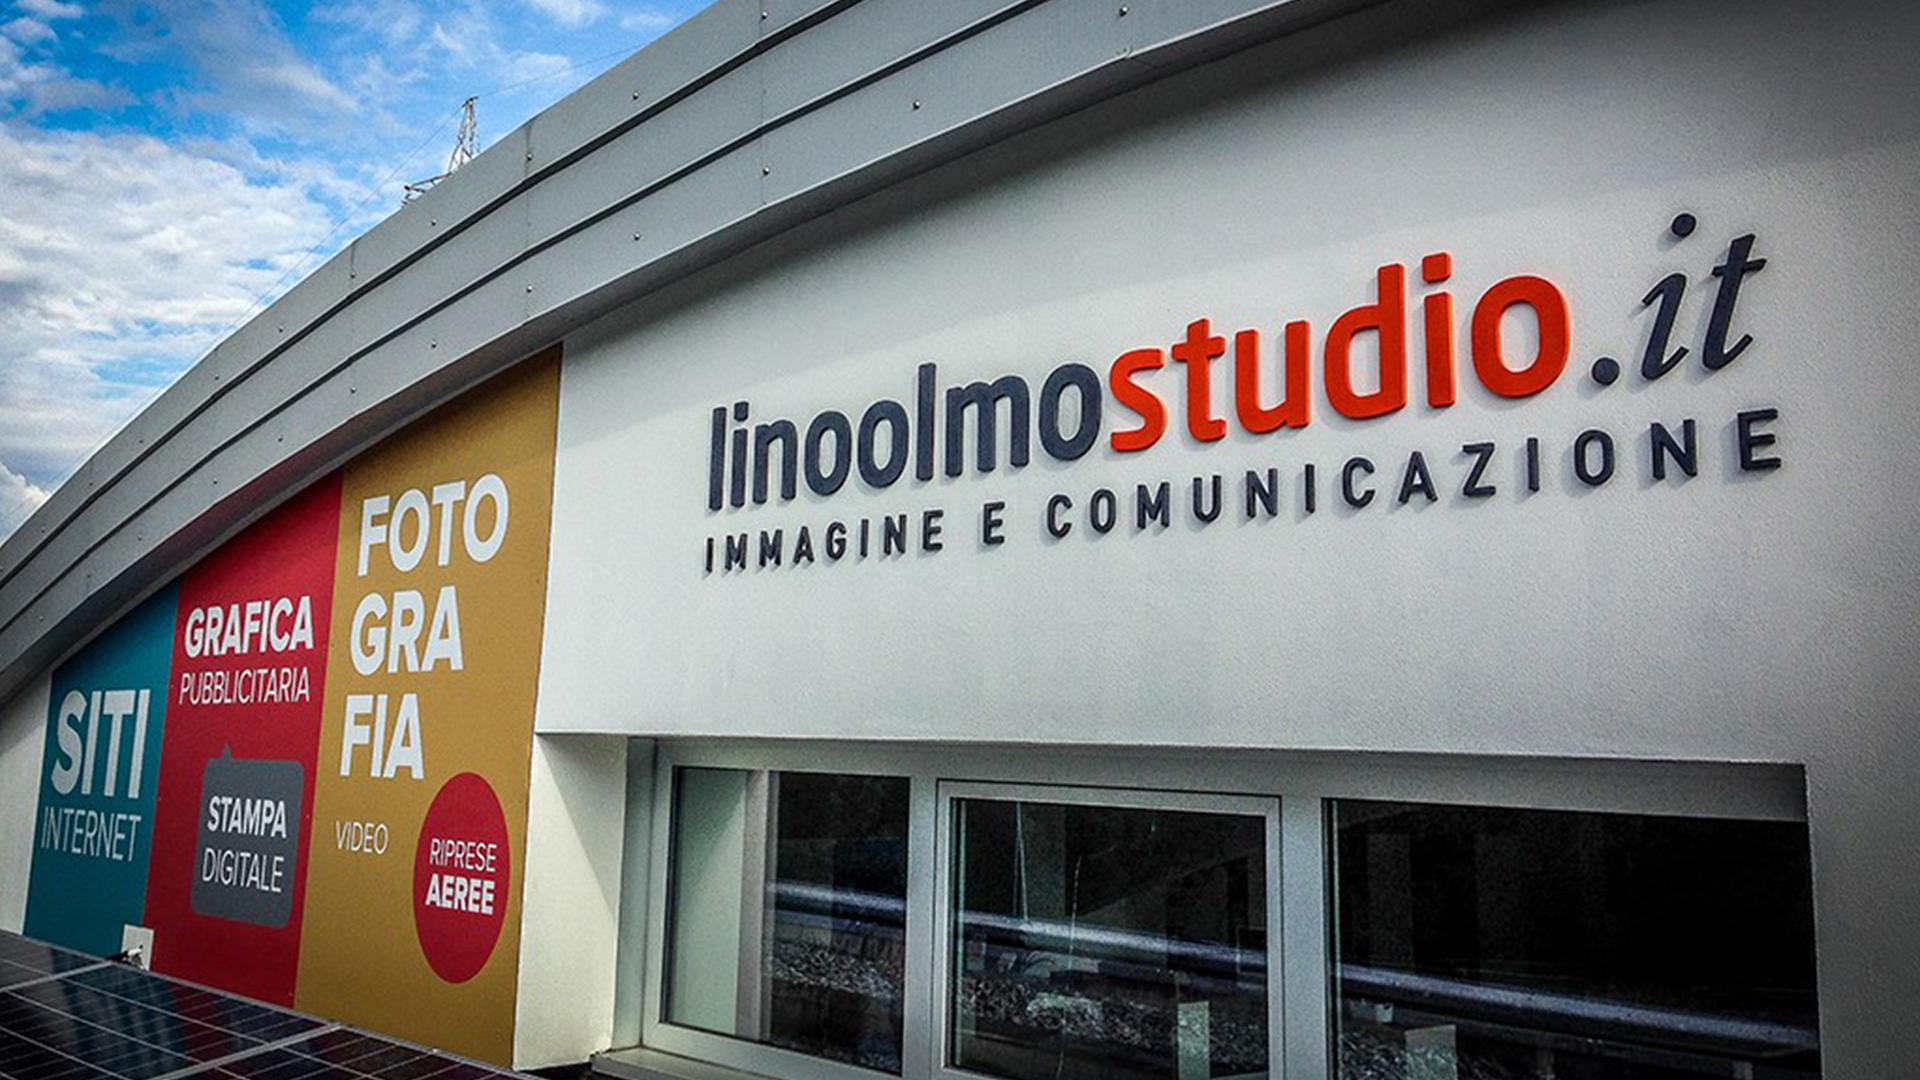 Linoolmo Studio